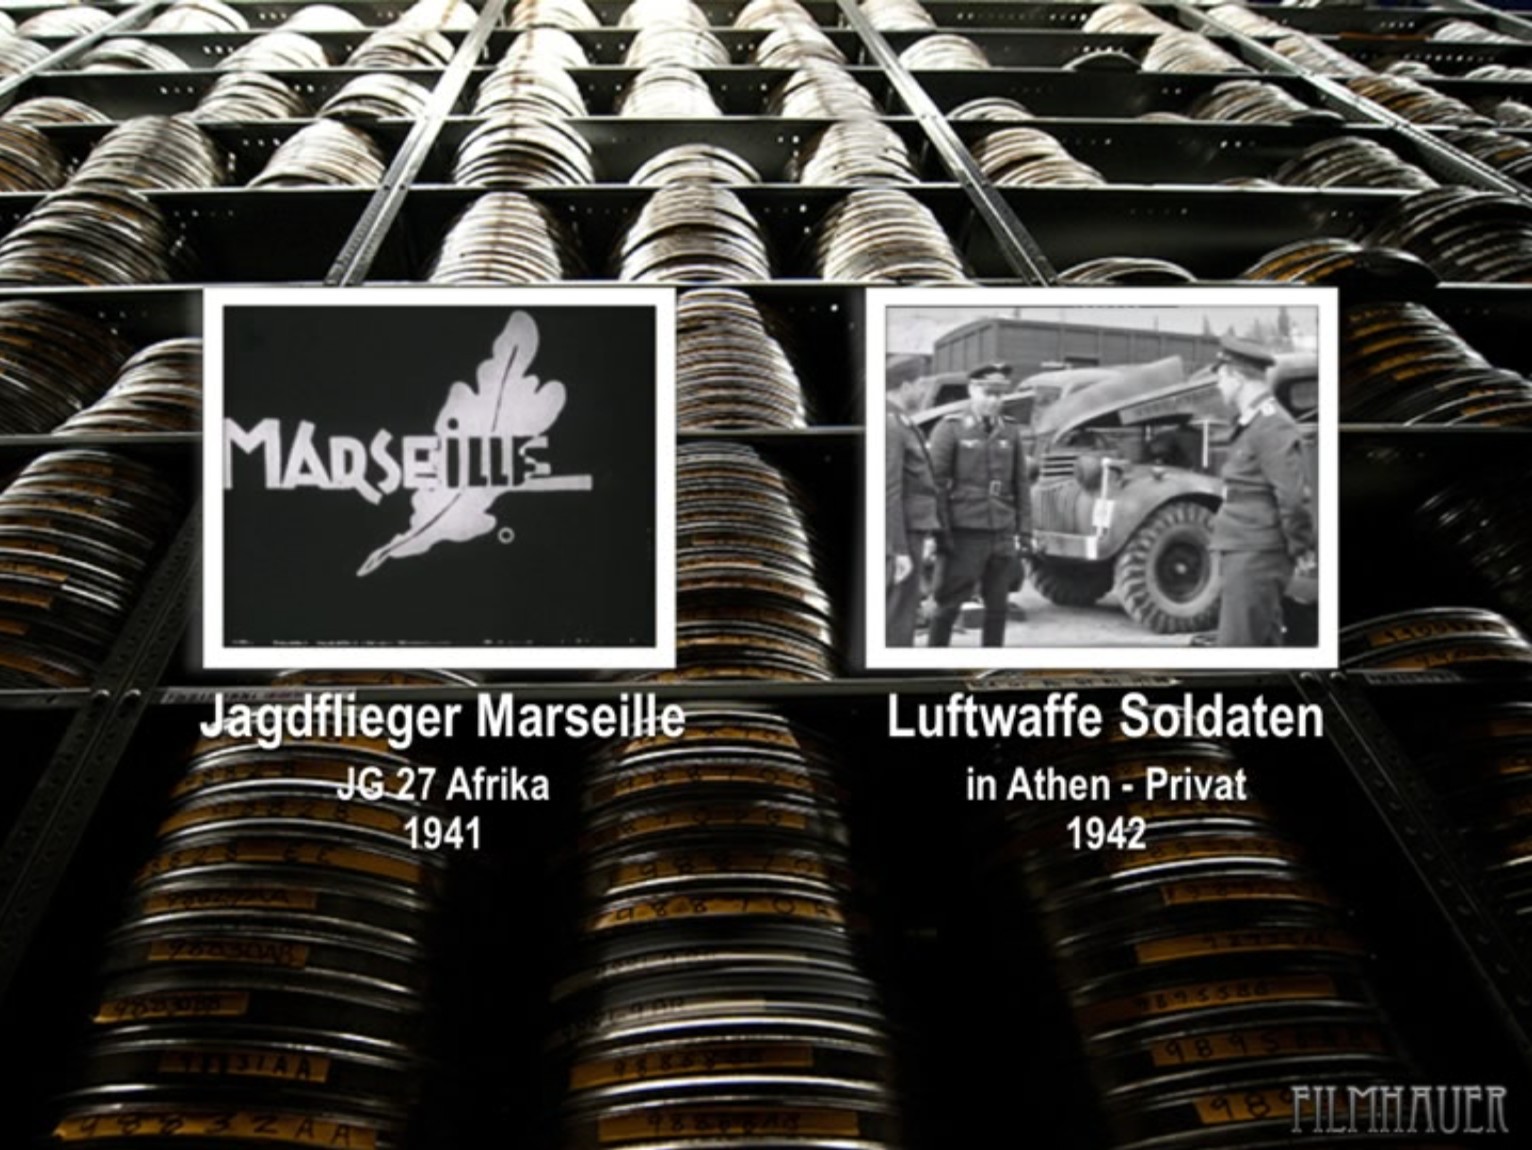 JAGDFLIEGER MARSEILLE, AFRIKA 1941 - LUFTWAFFE SOLDATEN IN ATHEN 1942